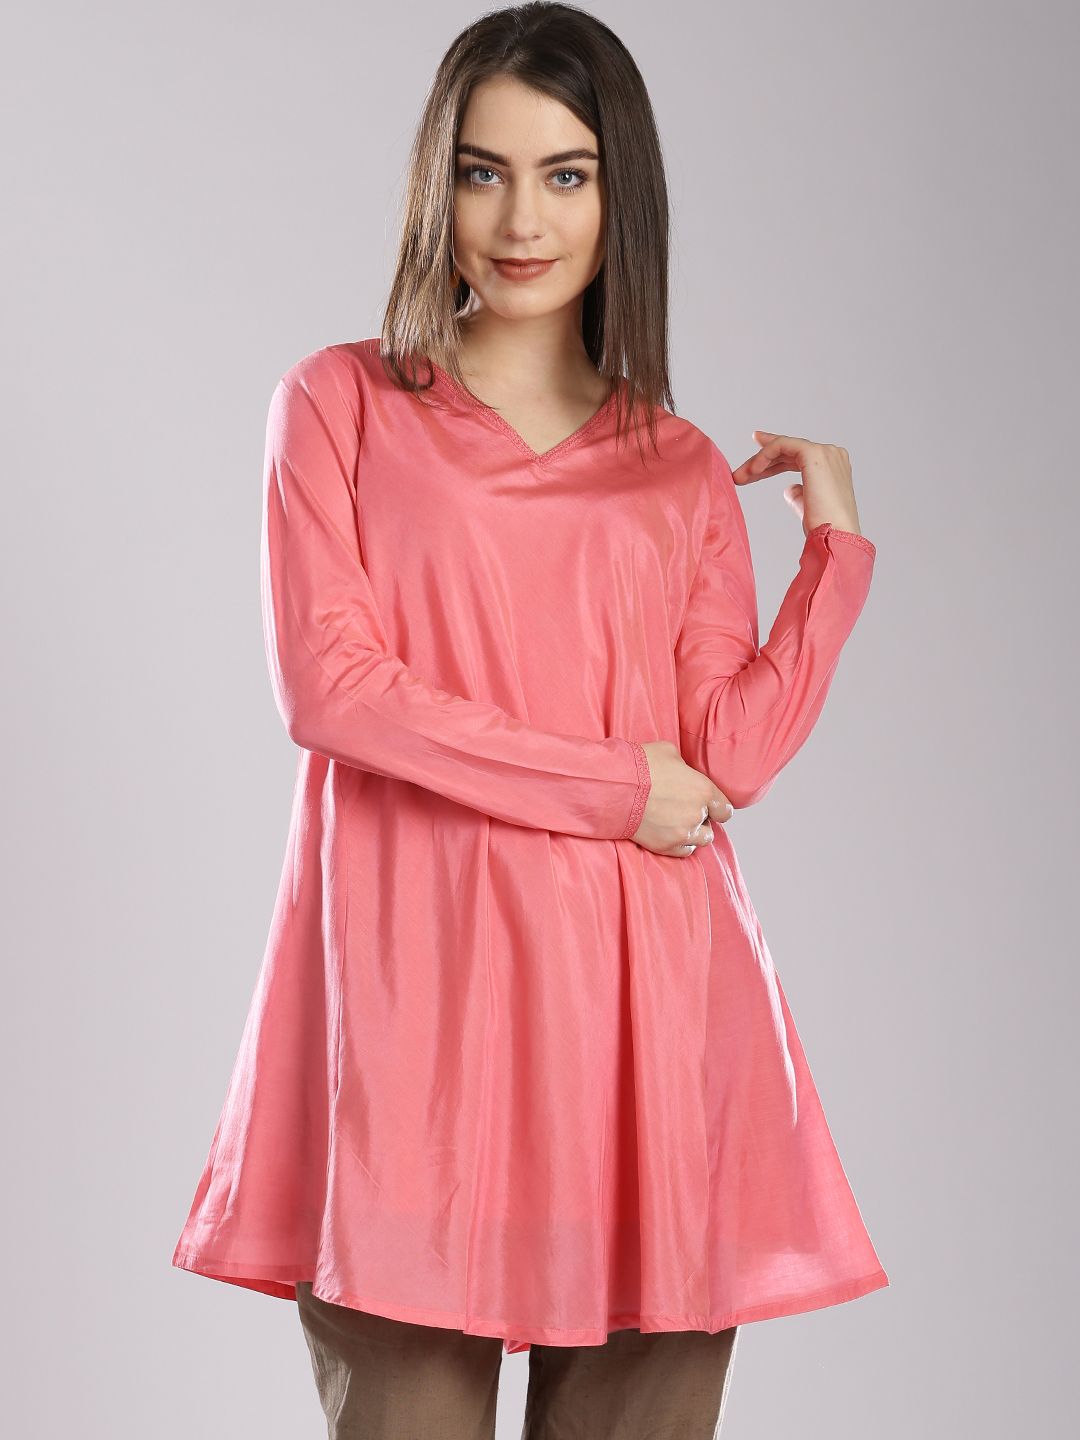 Fabindia Pink Tunic Price in India